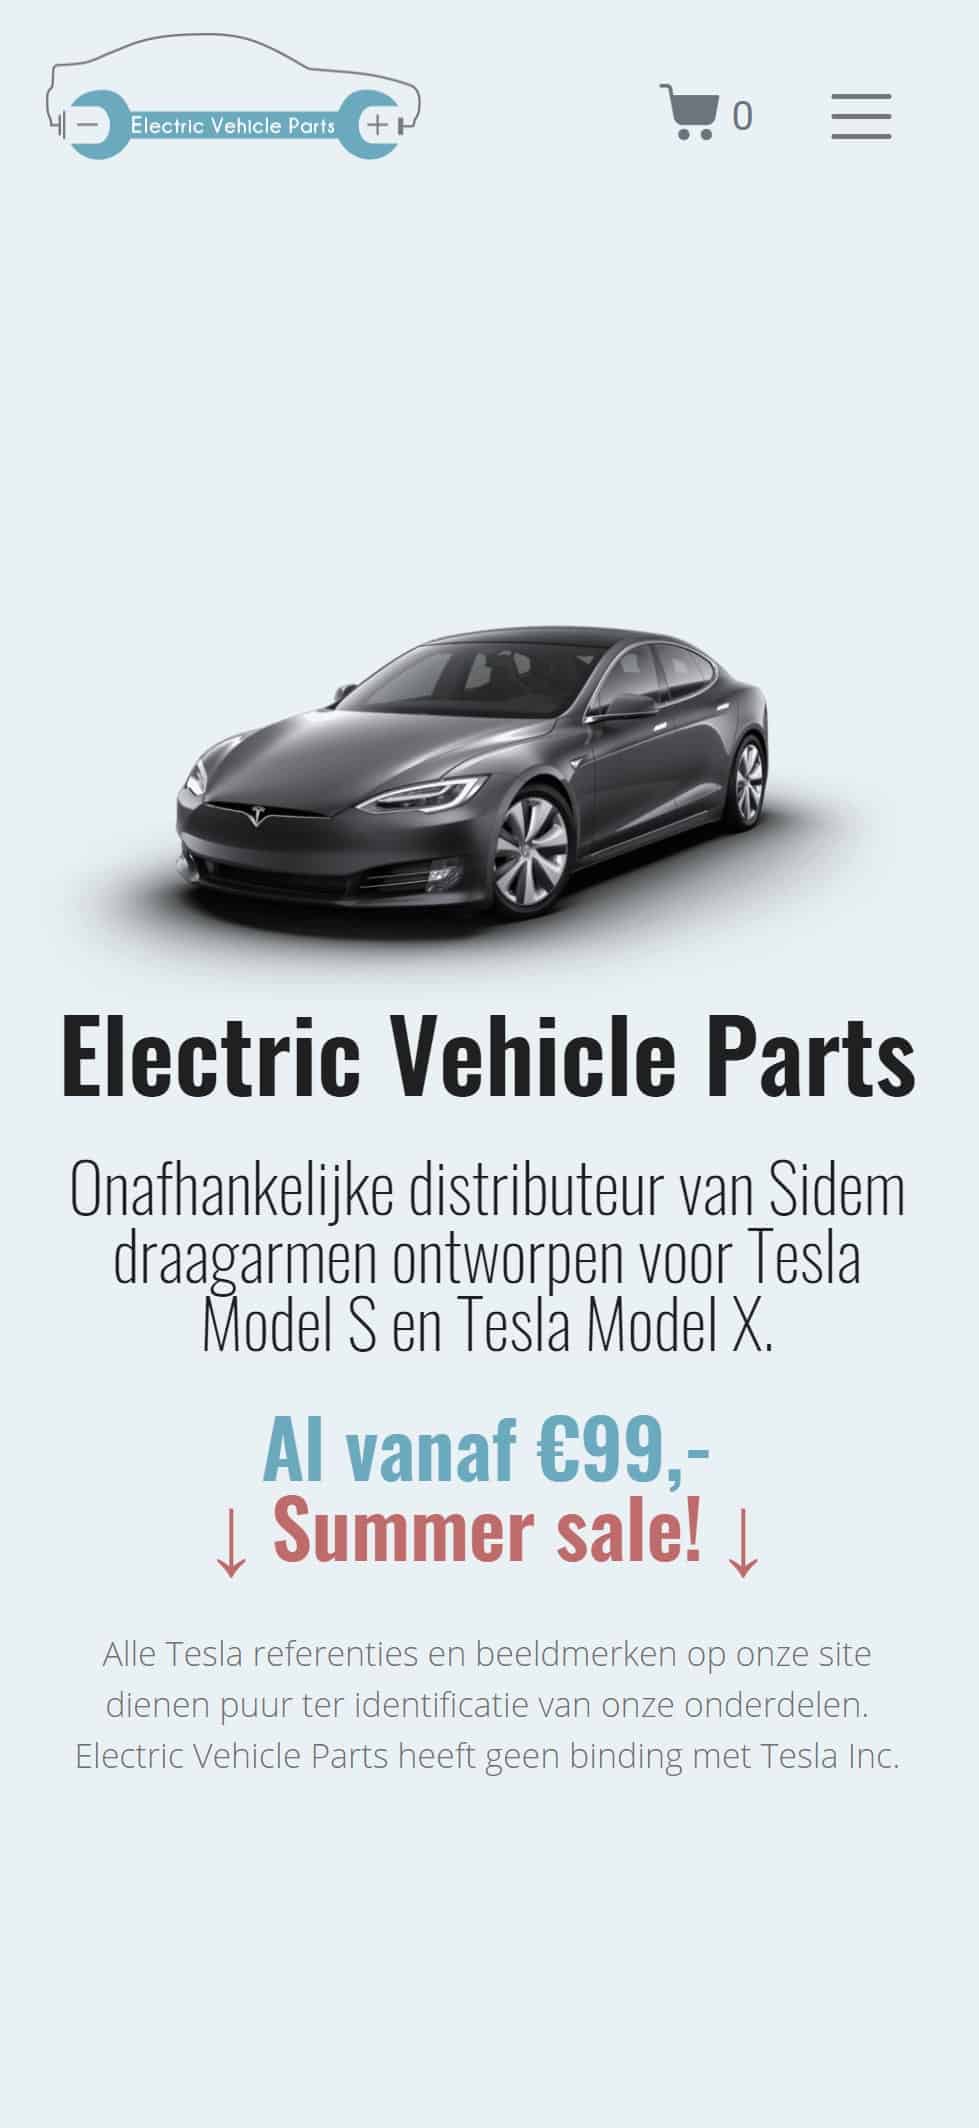 Electric Vehice Parts website - mobiel